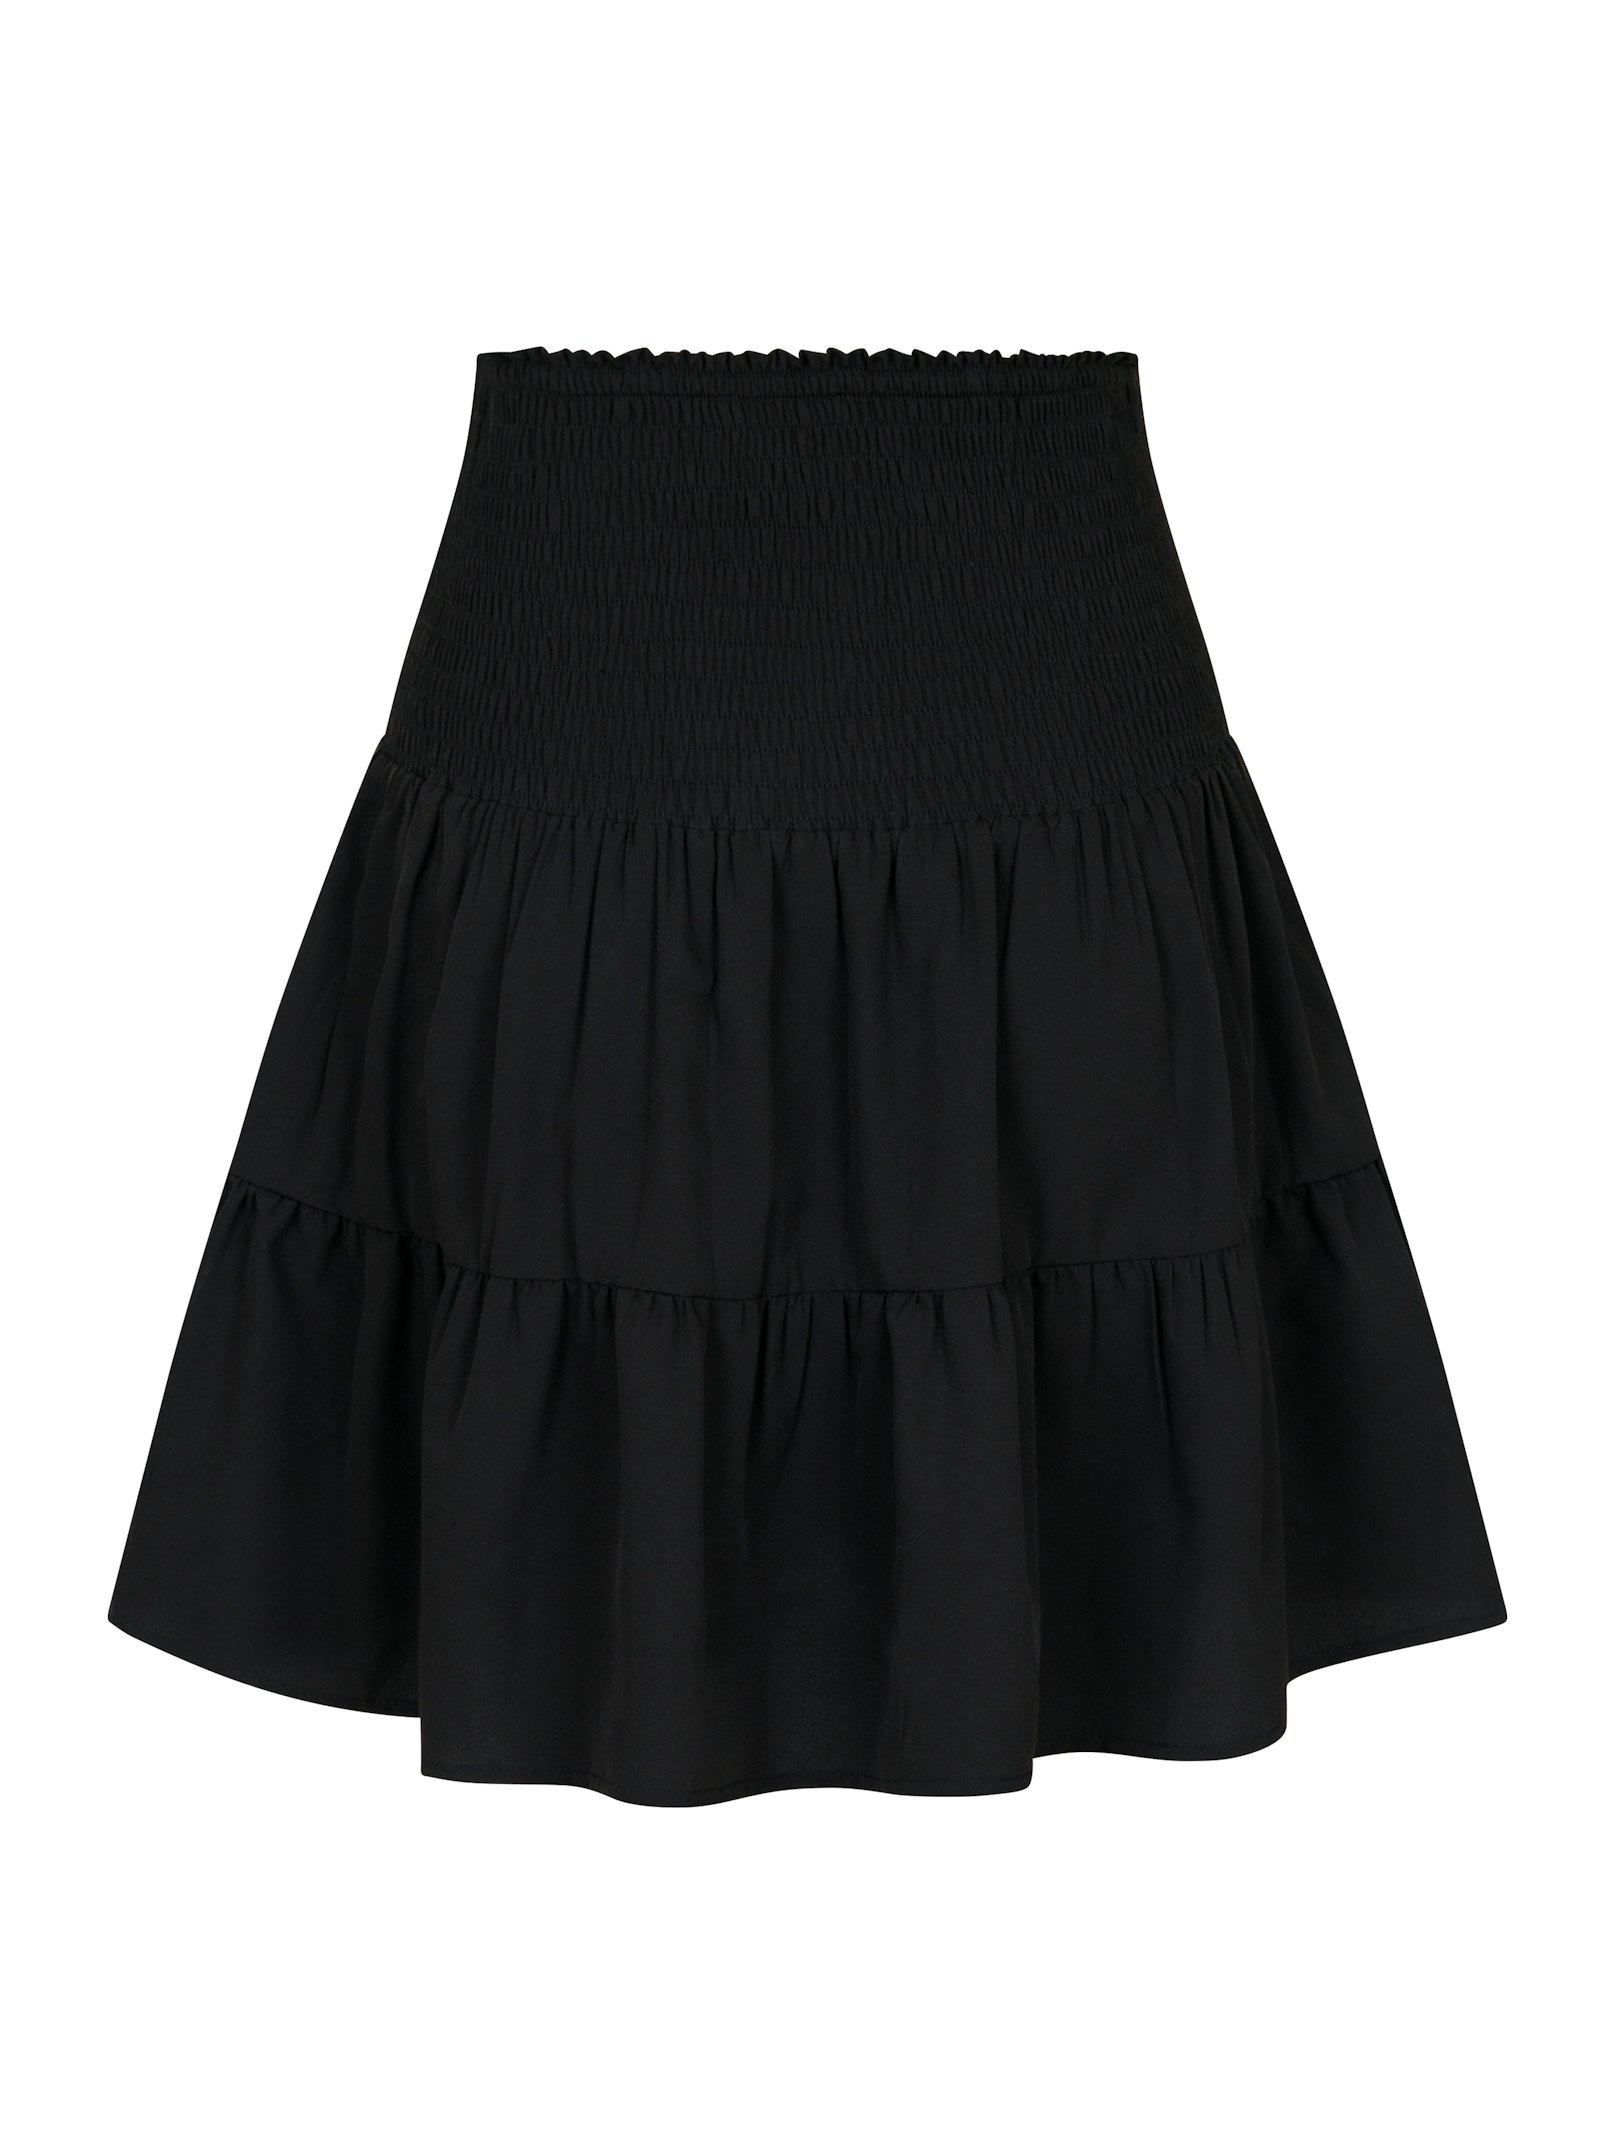 Cordova R Skirt